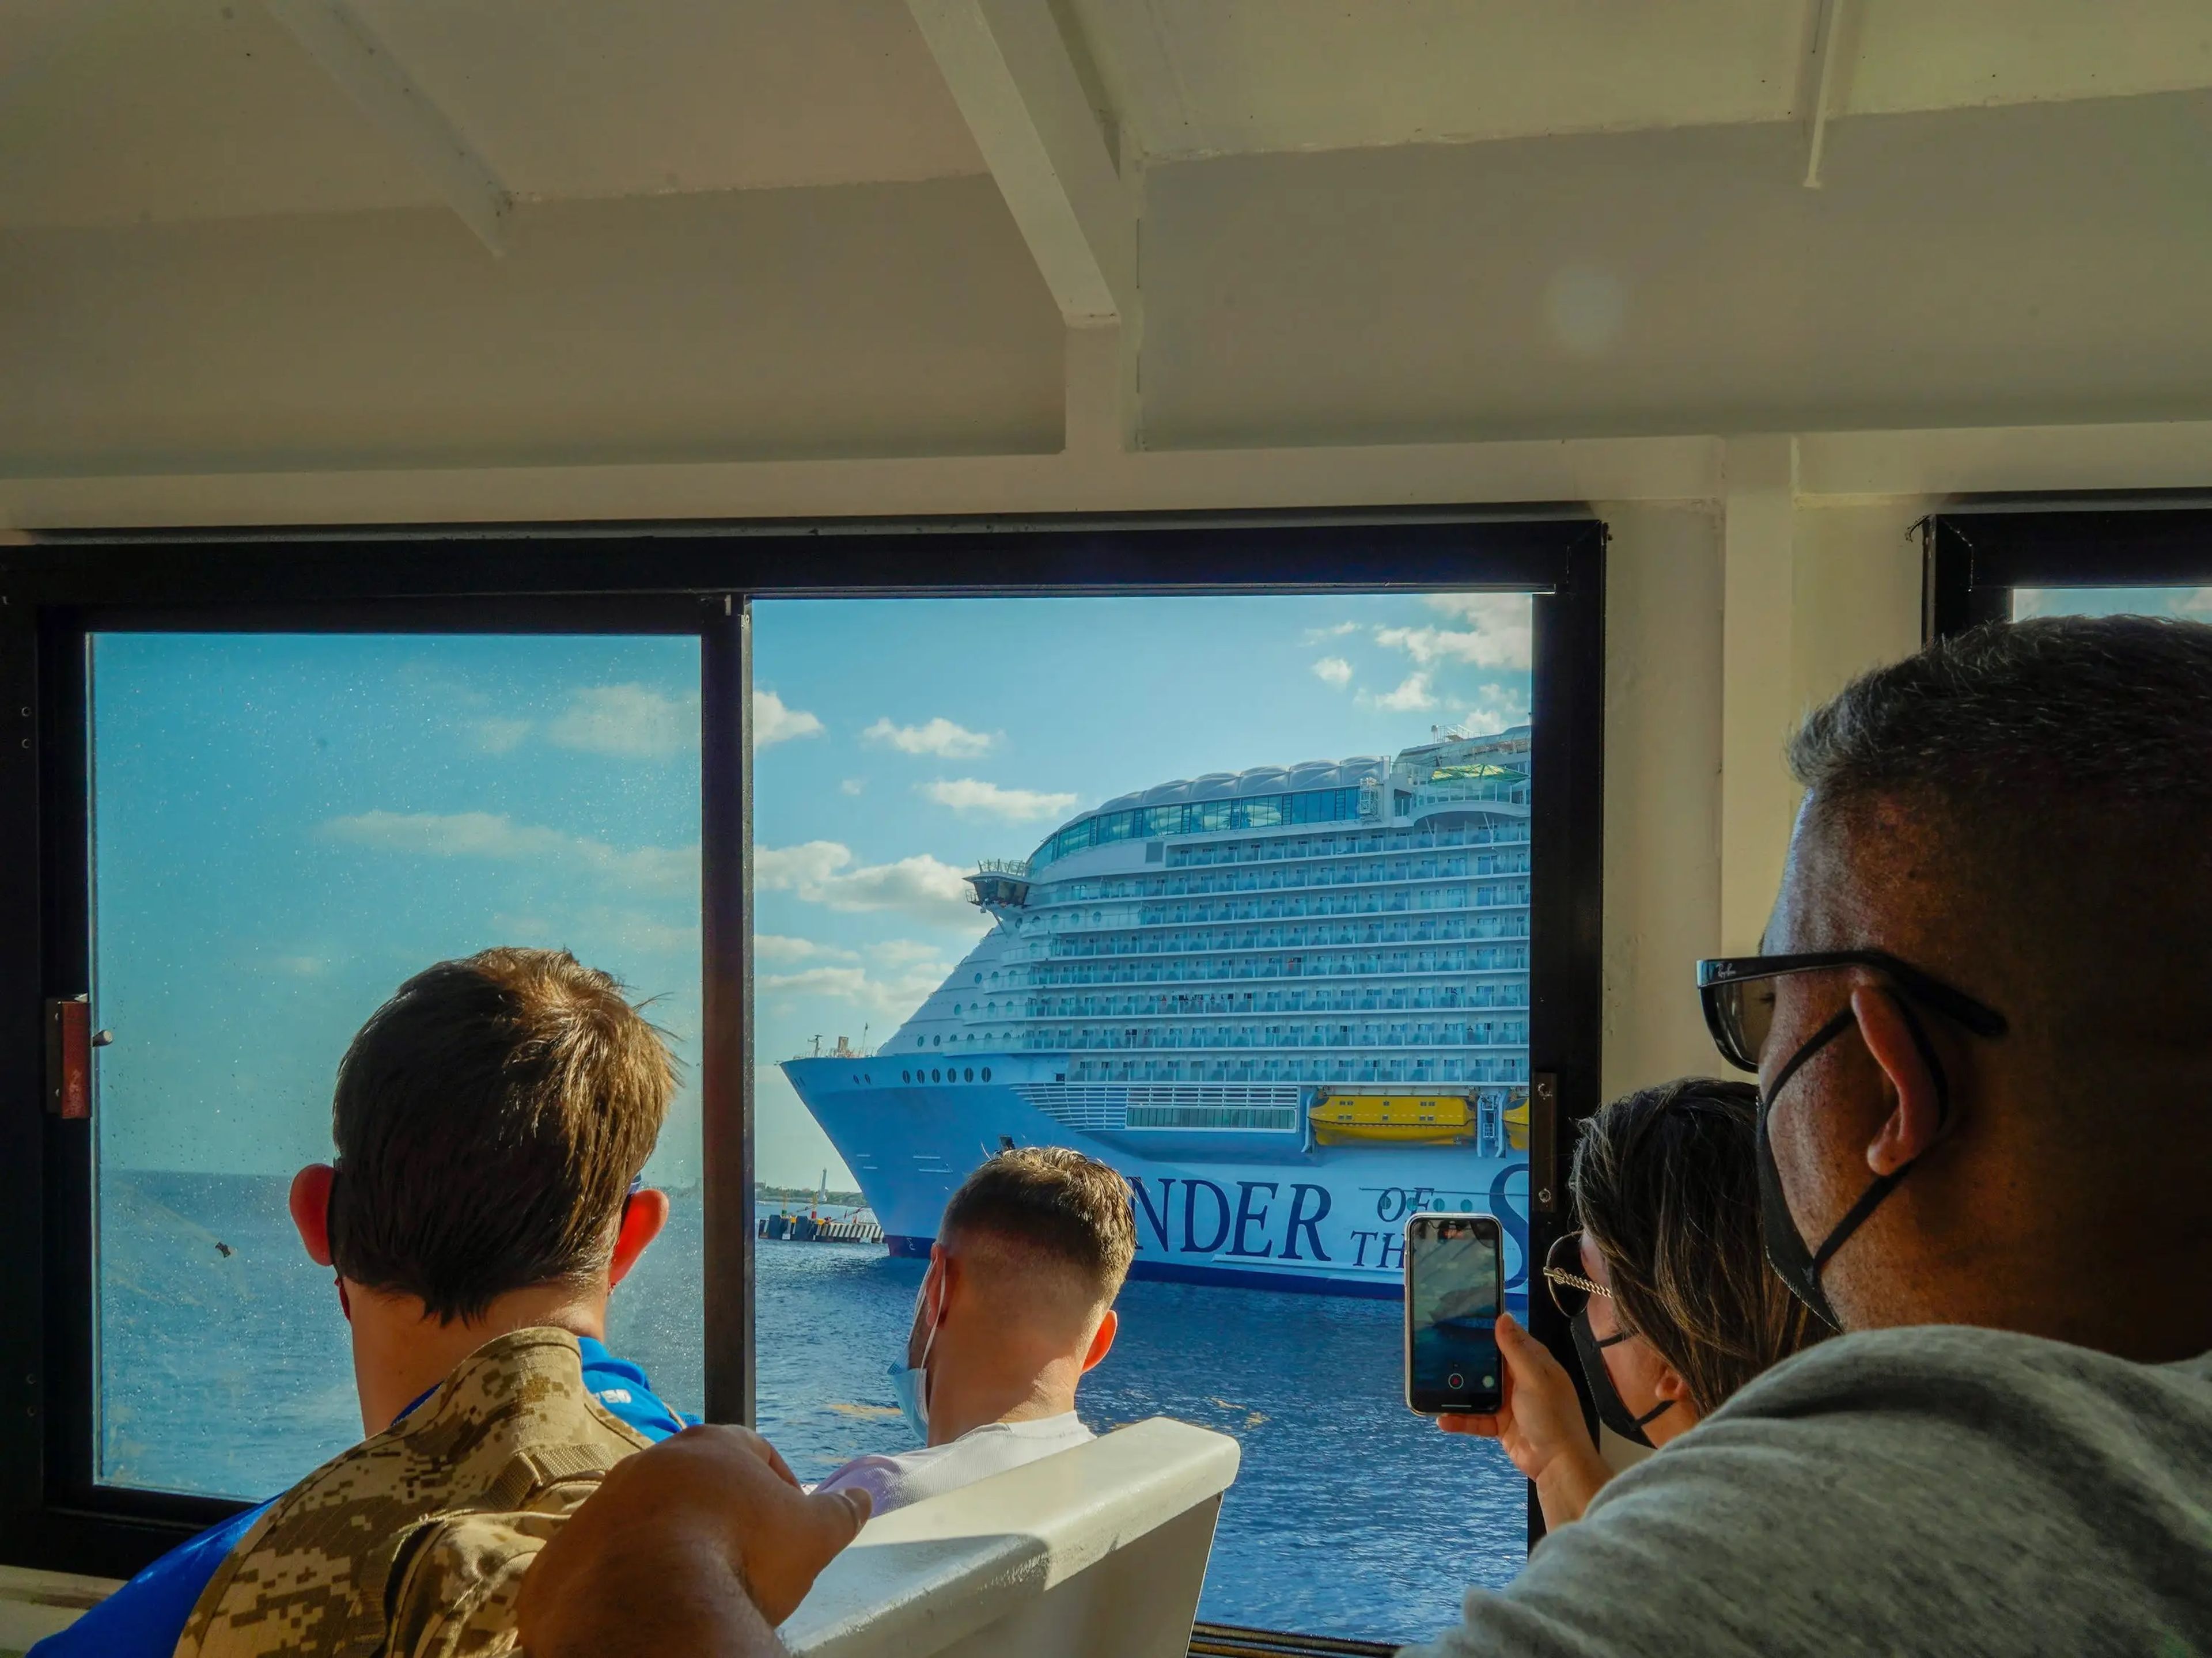 El 'Wonder of the Seas' desde la ventana de un ferry.